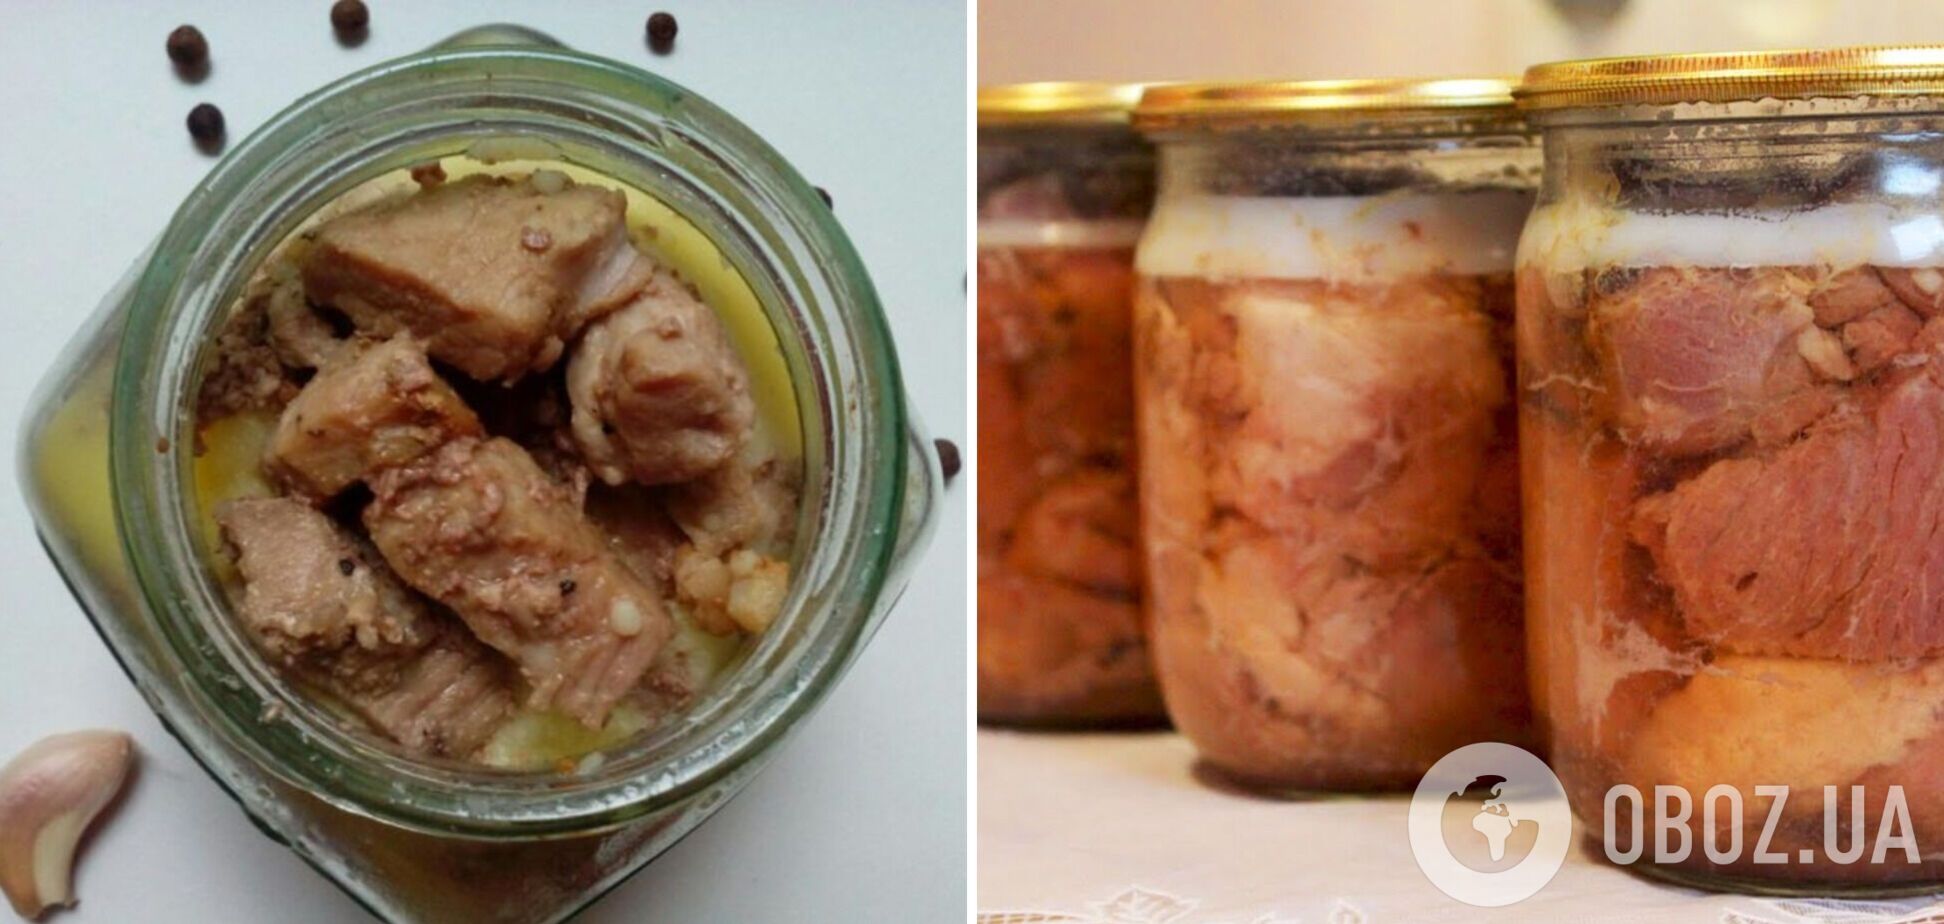 Сытная тушенка со свининой и фасолью в духовке: элементарный рецепт